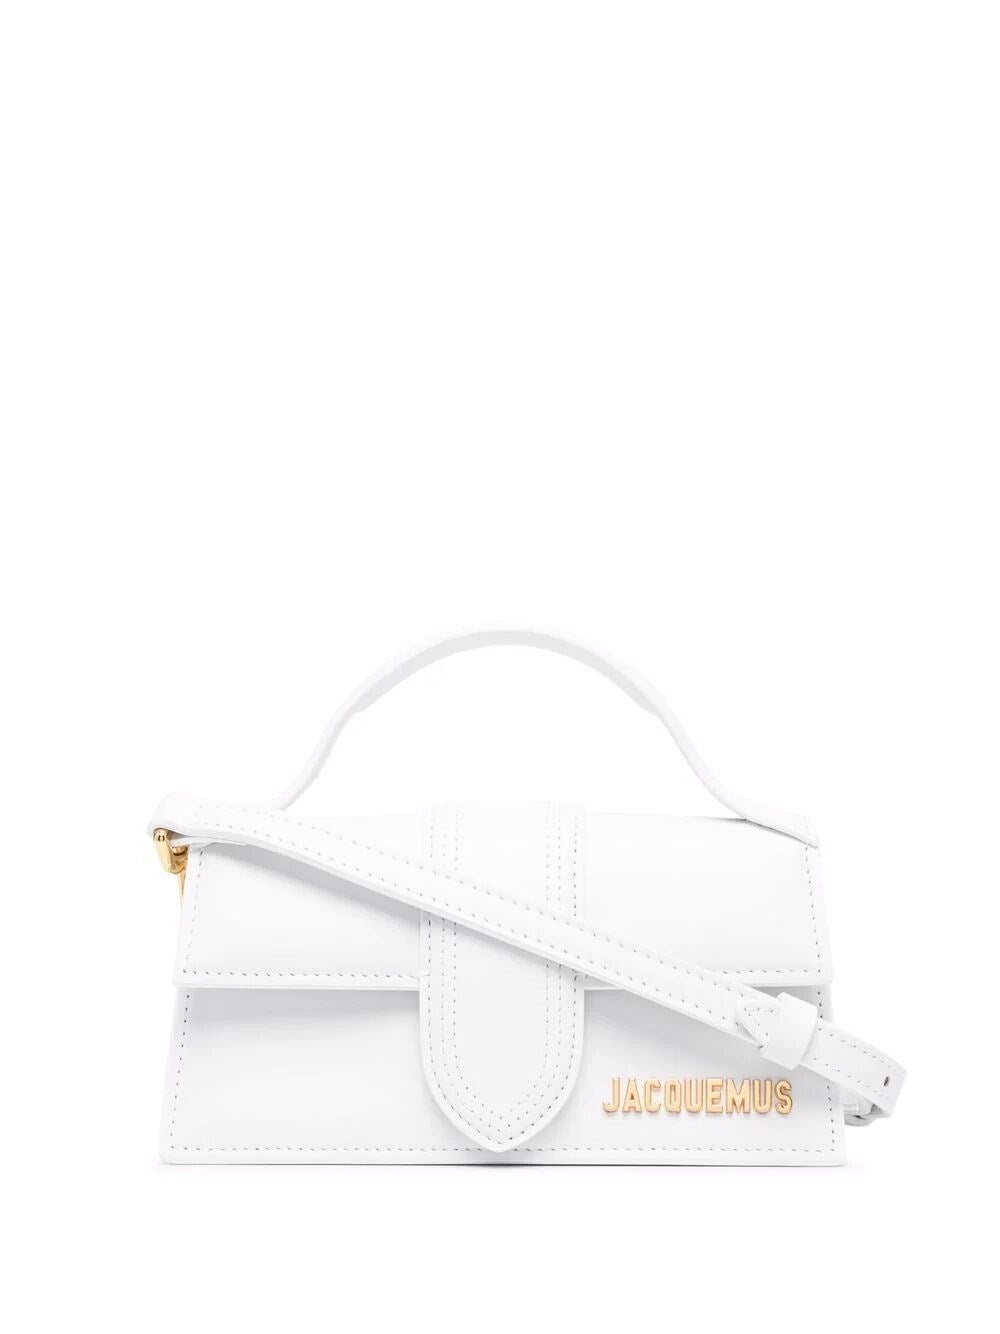 Jacquemus Women Le Bambino Small Handbag - 1